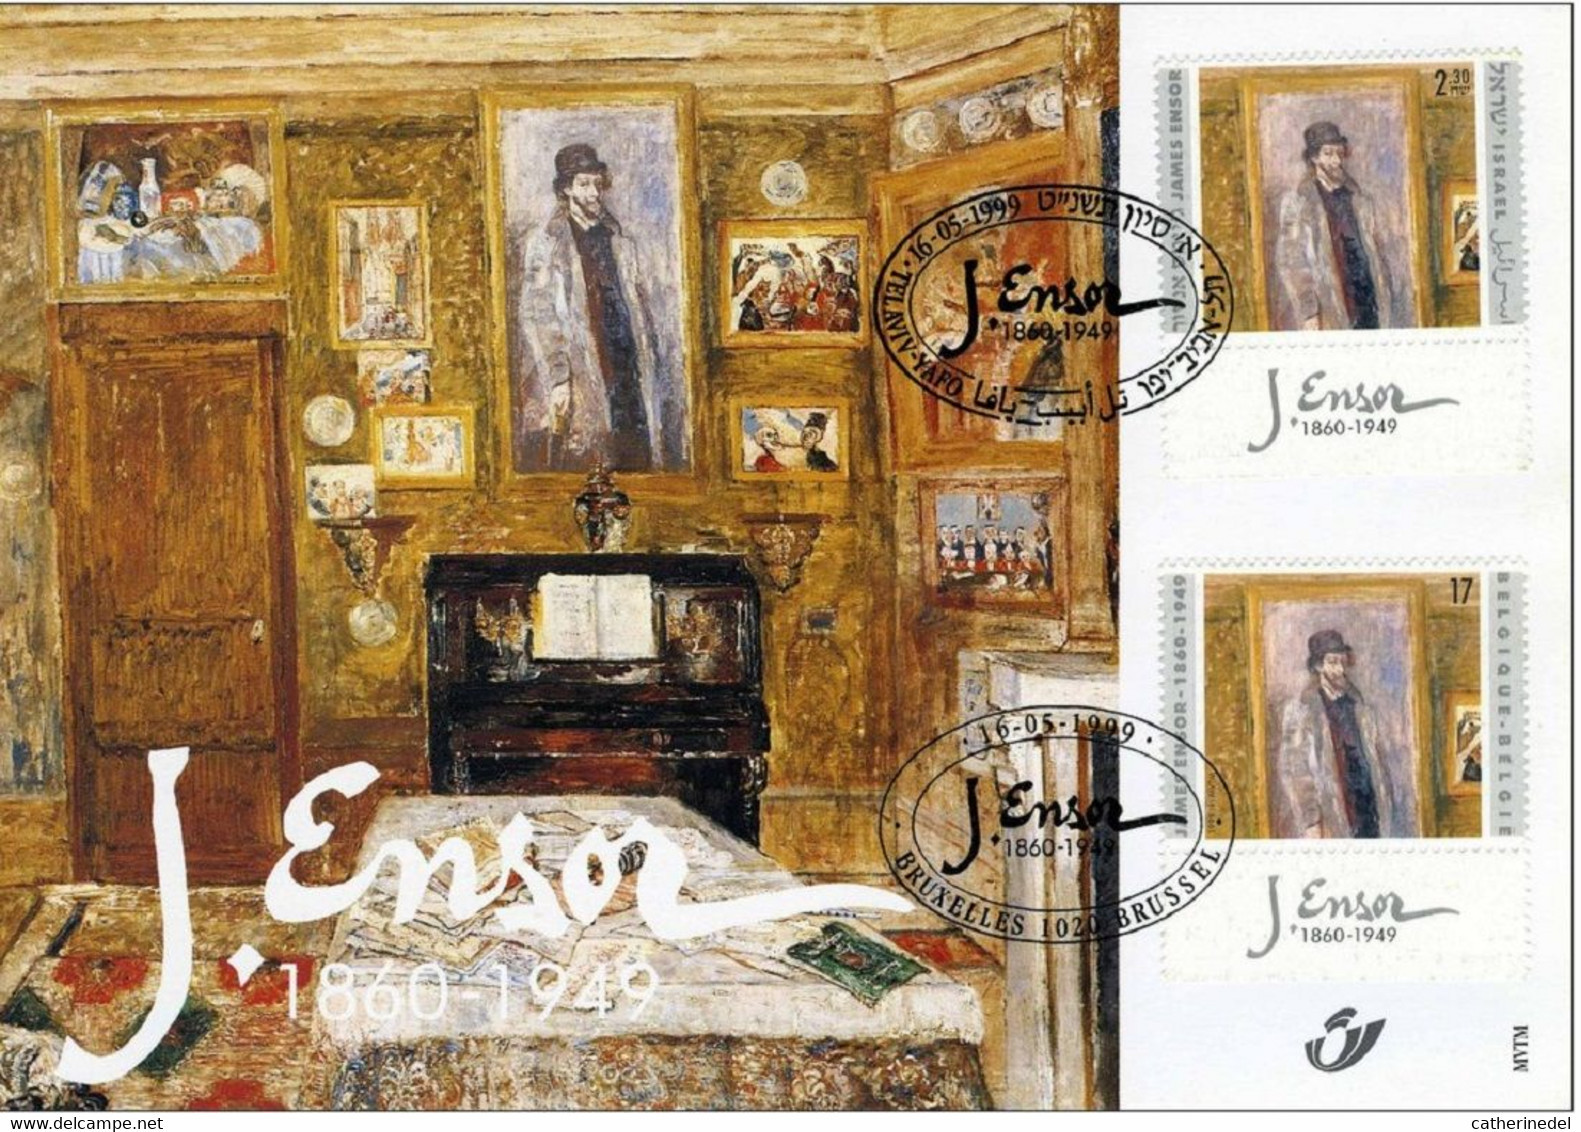 Année 1999 : Carte Souvenir 2822HK - James Ensor - Souvenir Cards - Joint Issues [HK]